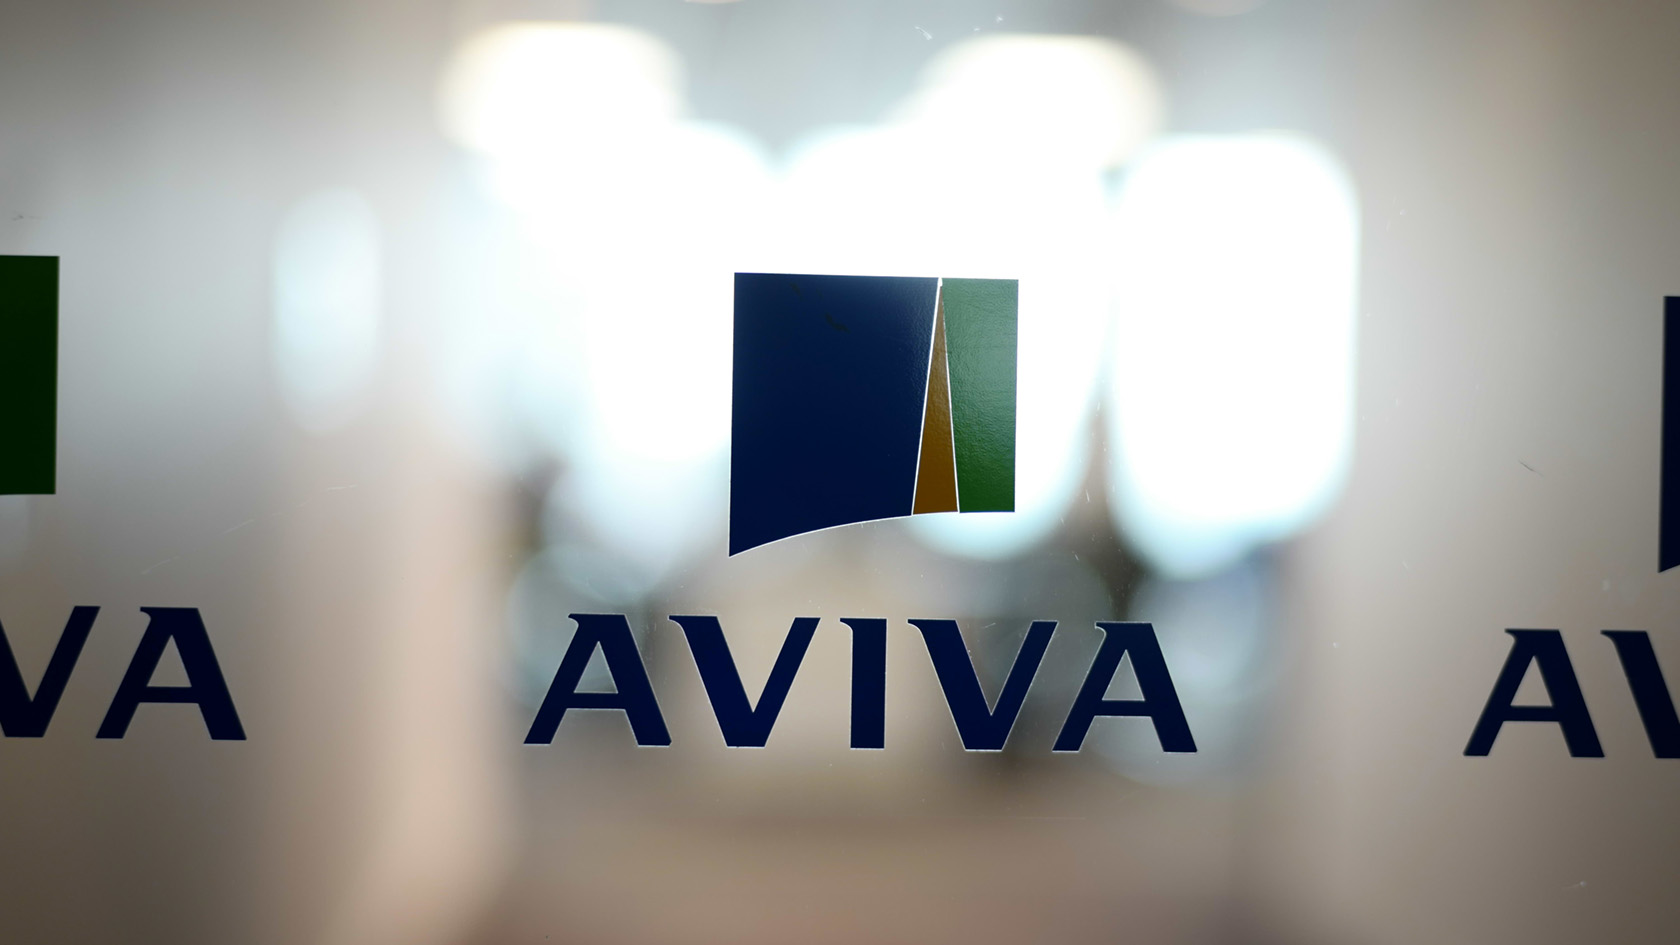 Aviva logo on frosted glass